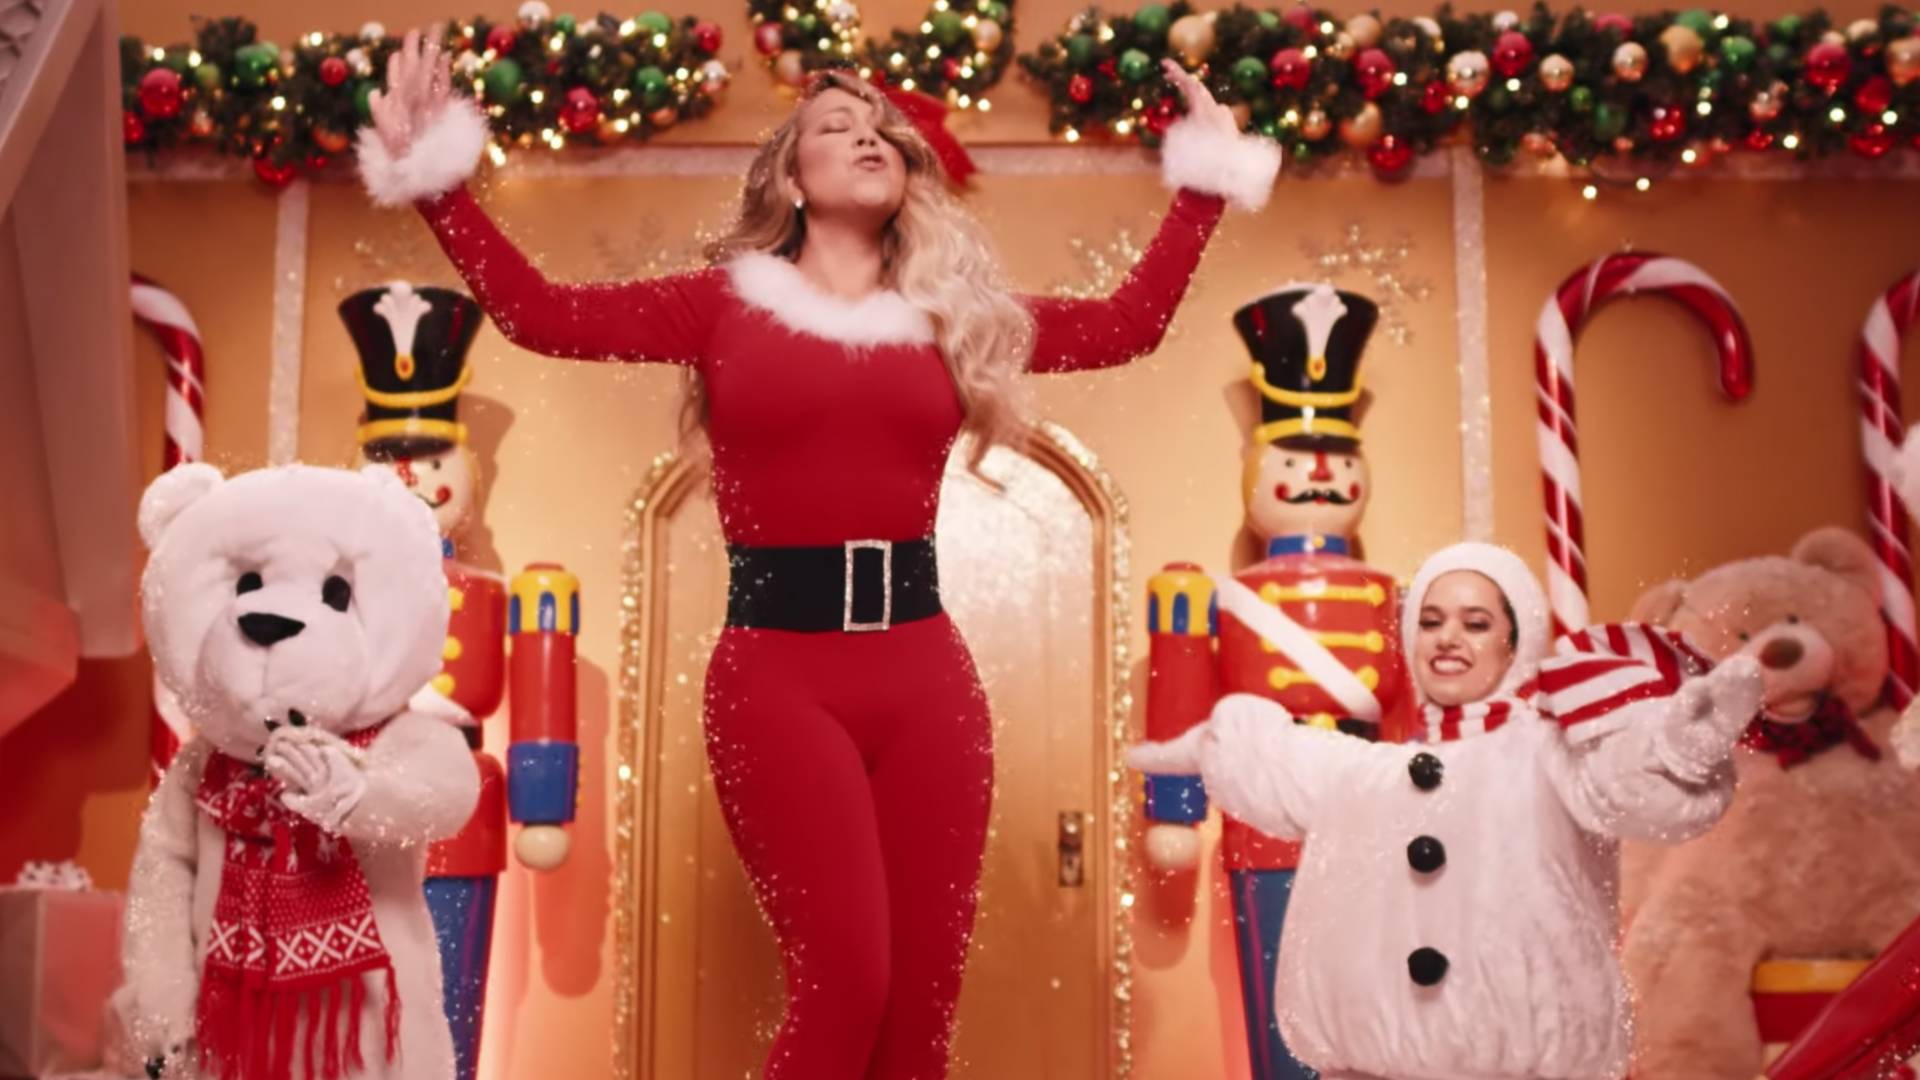 "All I Want For Christmas Is You" - 25 lat po premierze Mariah Carey pokazała nowy teledysk